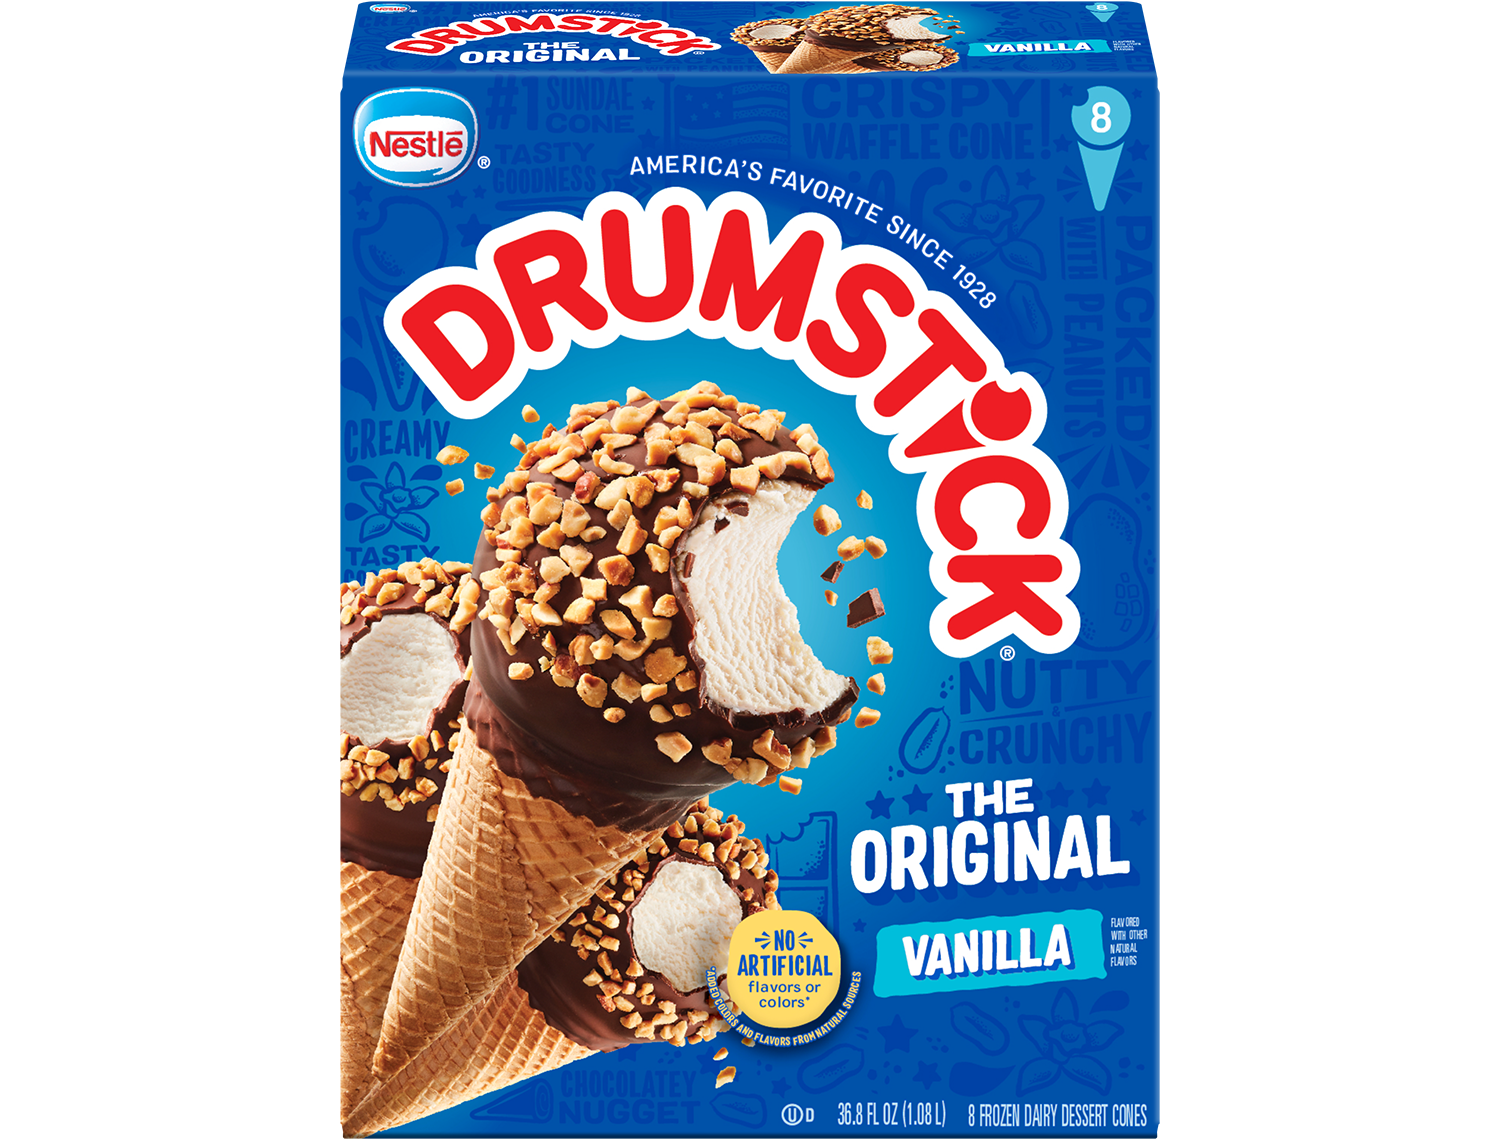 Carton of Drumstick original vanilla cones